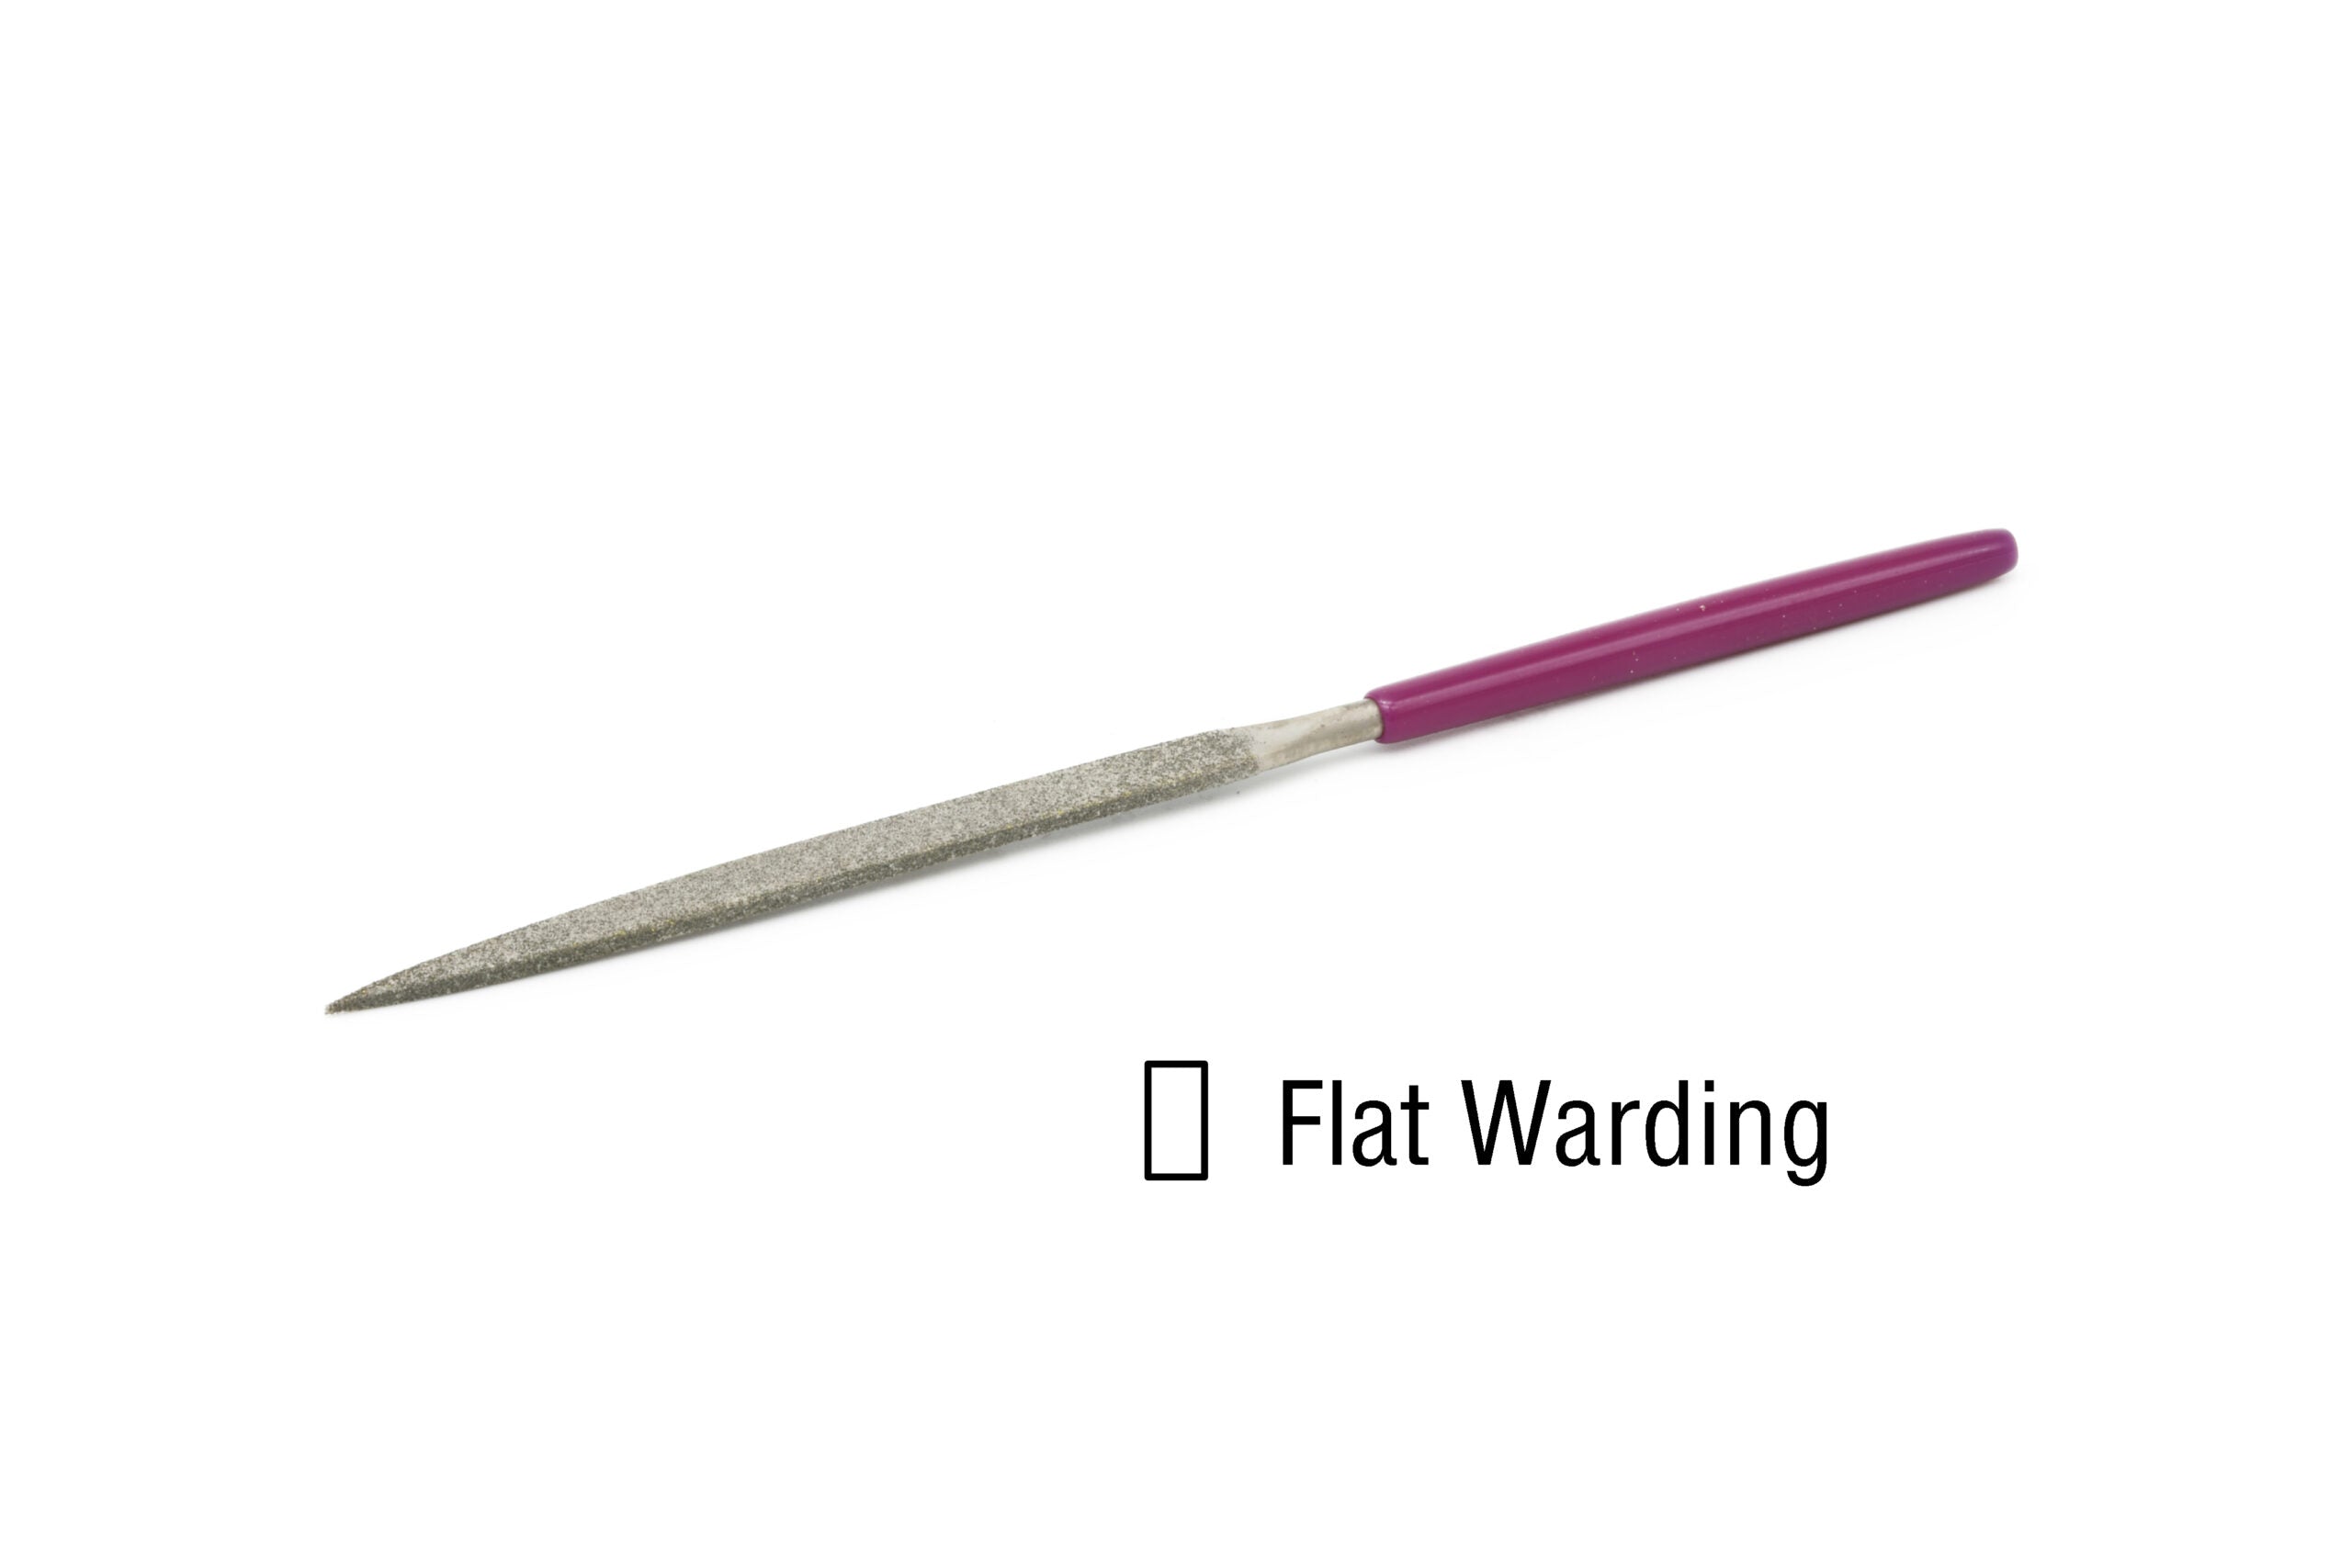 EZE-LAP Needle File Flat Warding  Coarse